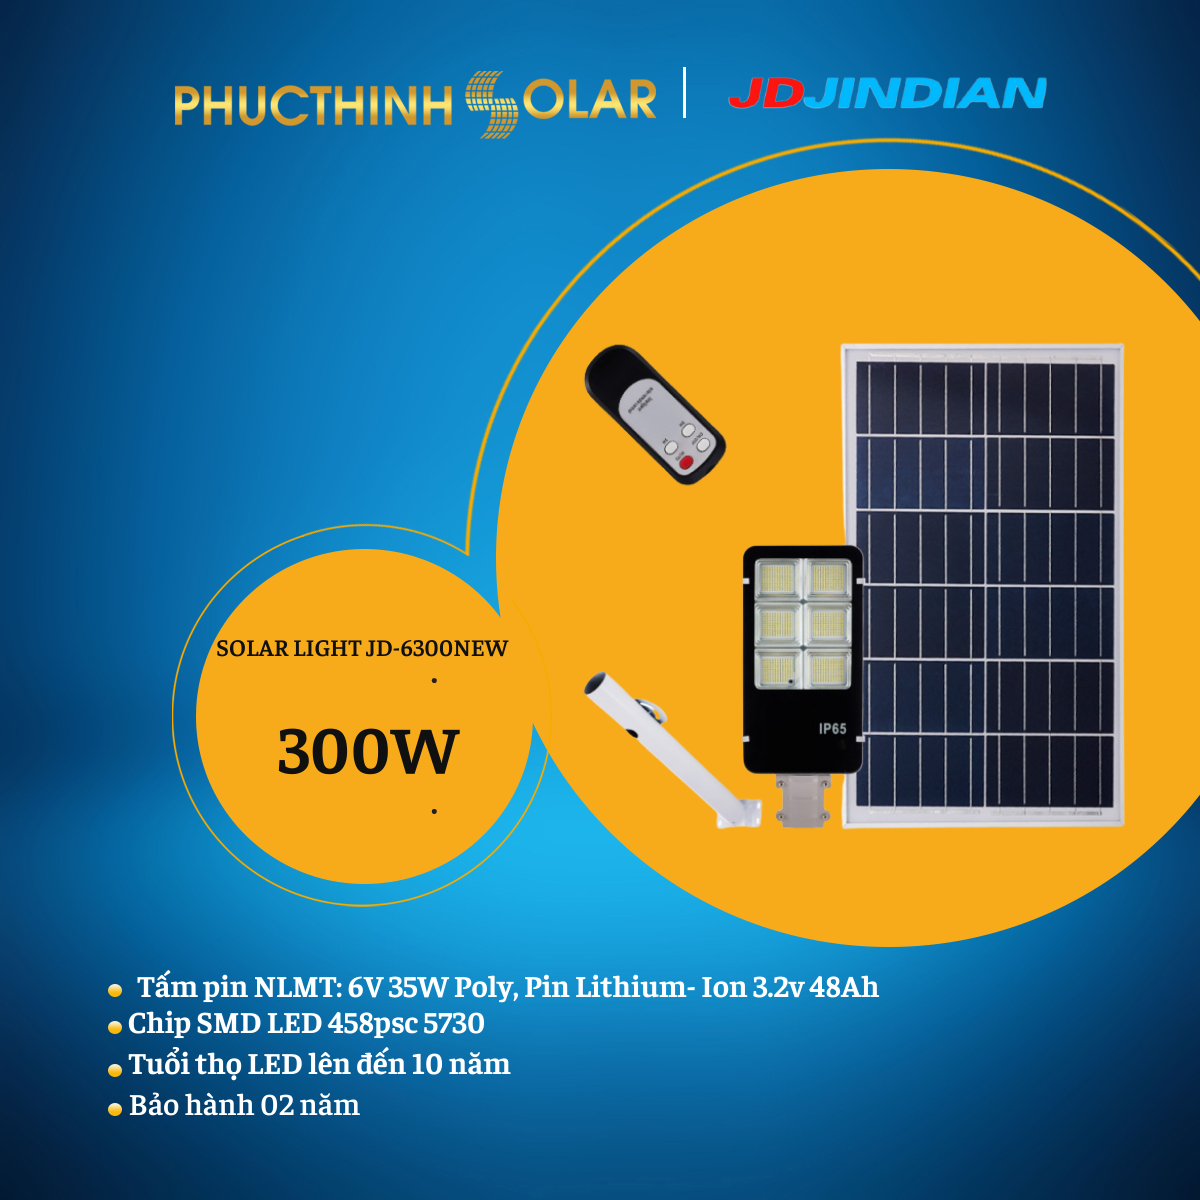 Đèn Đường Năng Lượng Mặt Trời 300W Jindian JDE-6300New Có Remote - Tiêu Chuẩn IP67 Chống Thấm Nước | Phúc Thịnh Solar